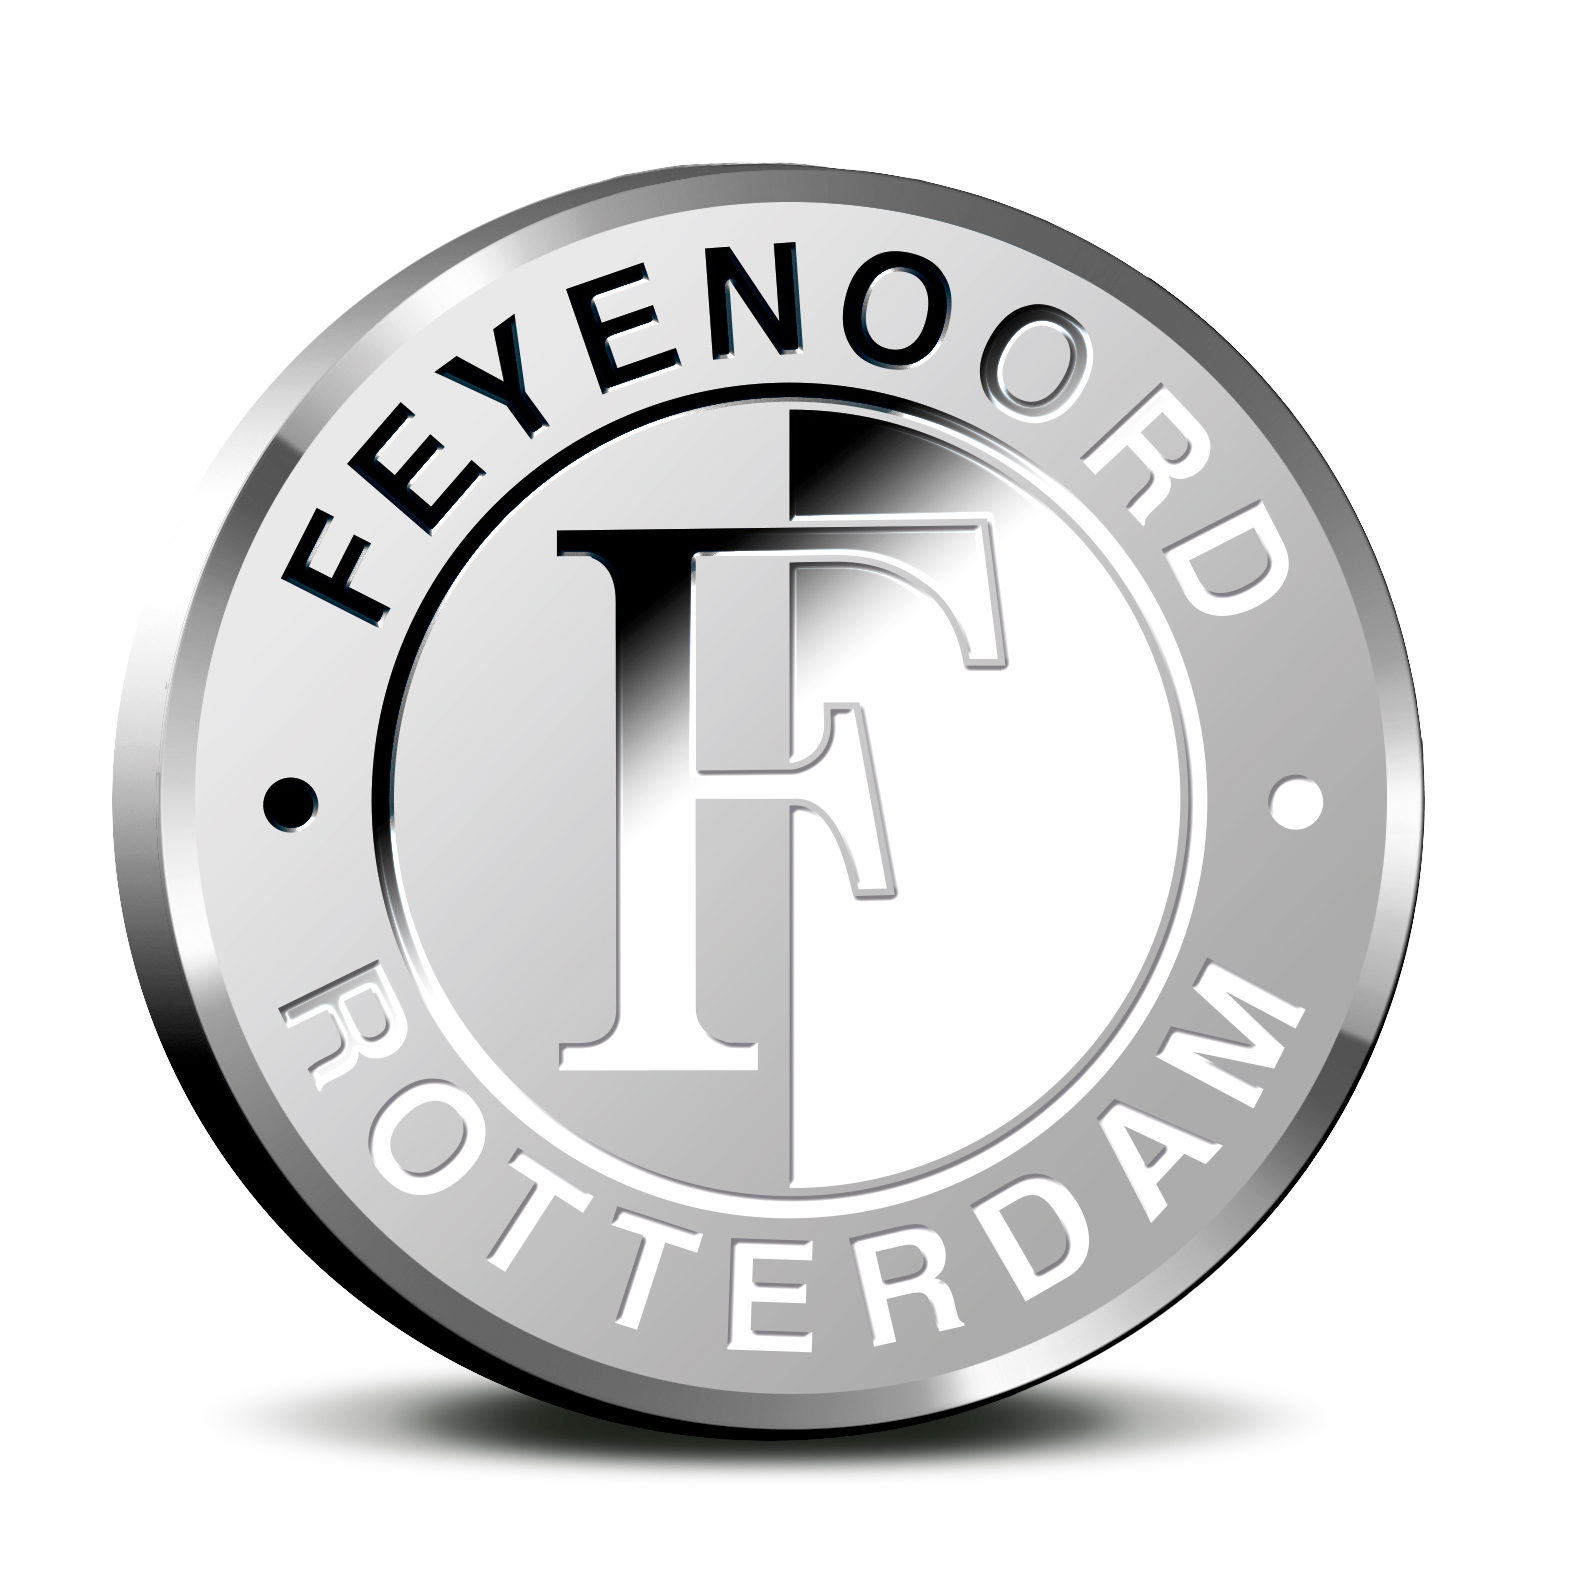 Kampioenspenning Feyenoord 2017 BU-kwaliteit in coincard